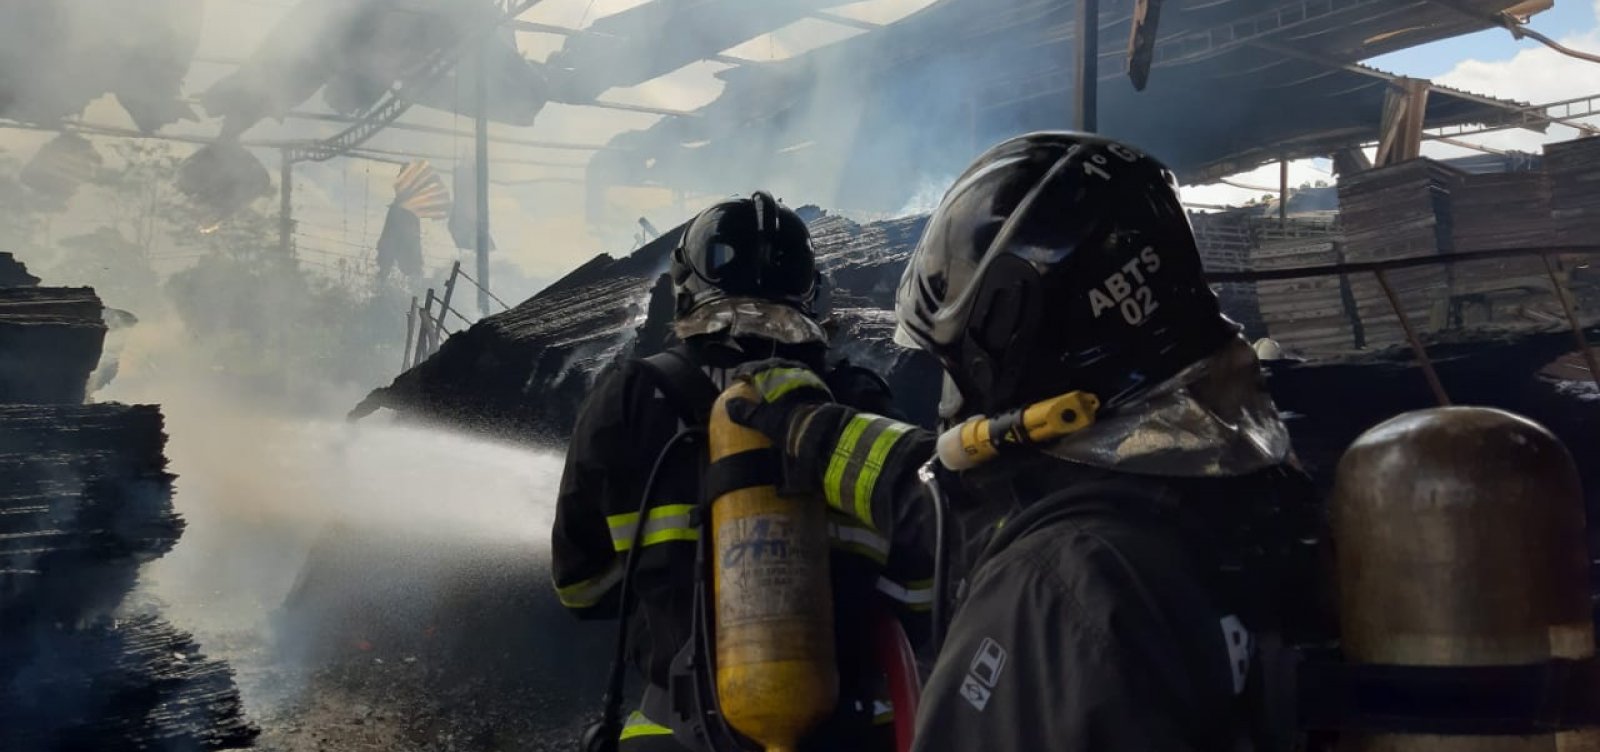 Bombeiros controlam incêndio em fábrica de Simões Filho